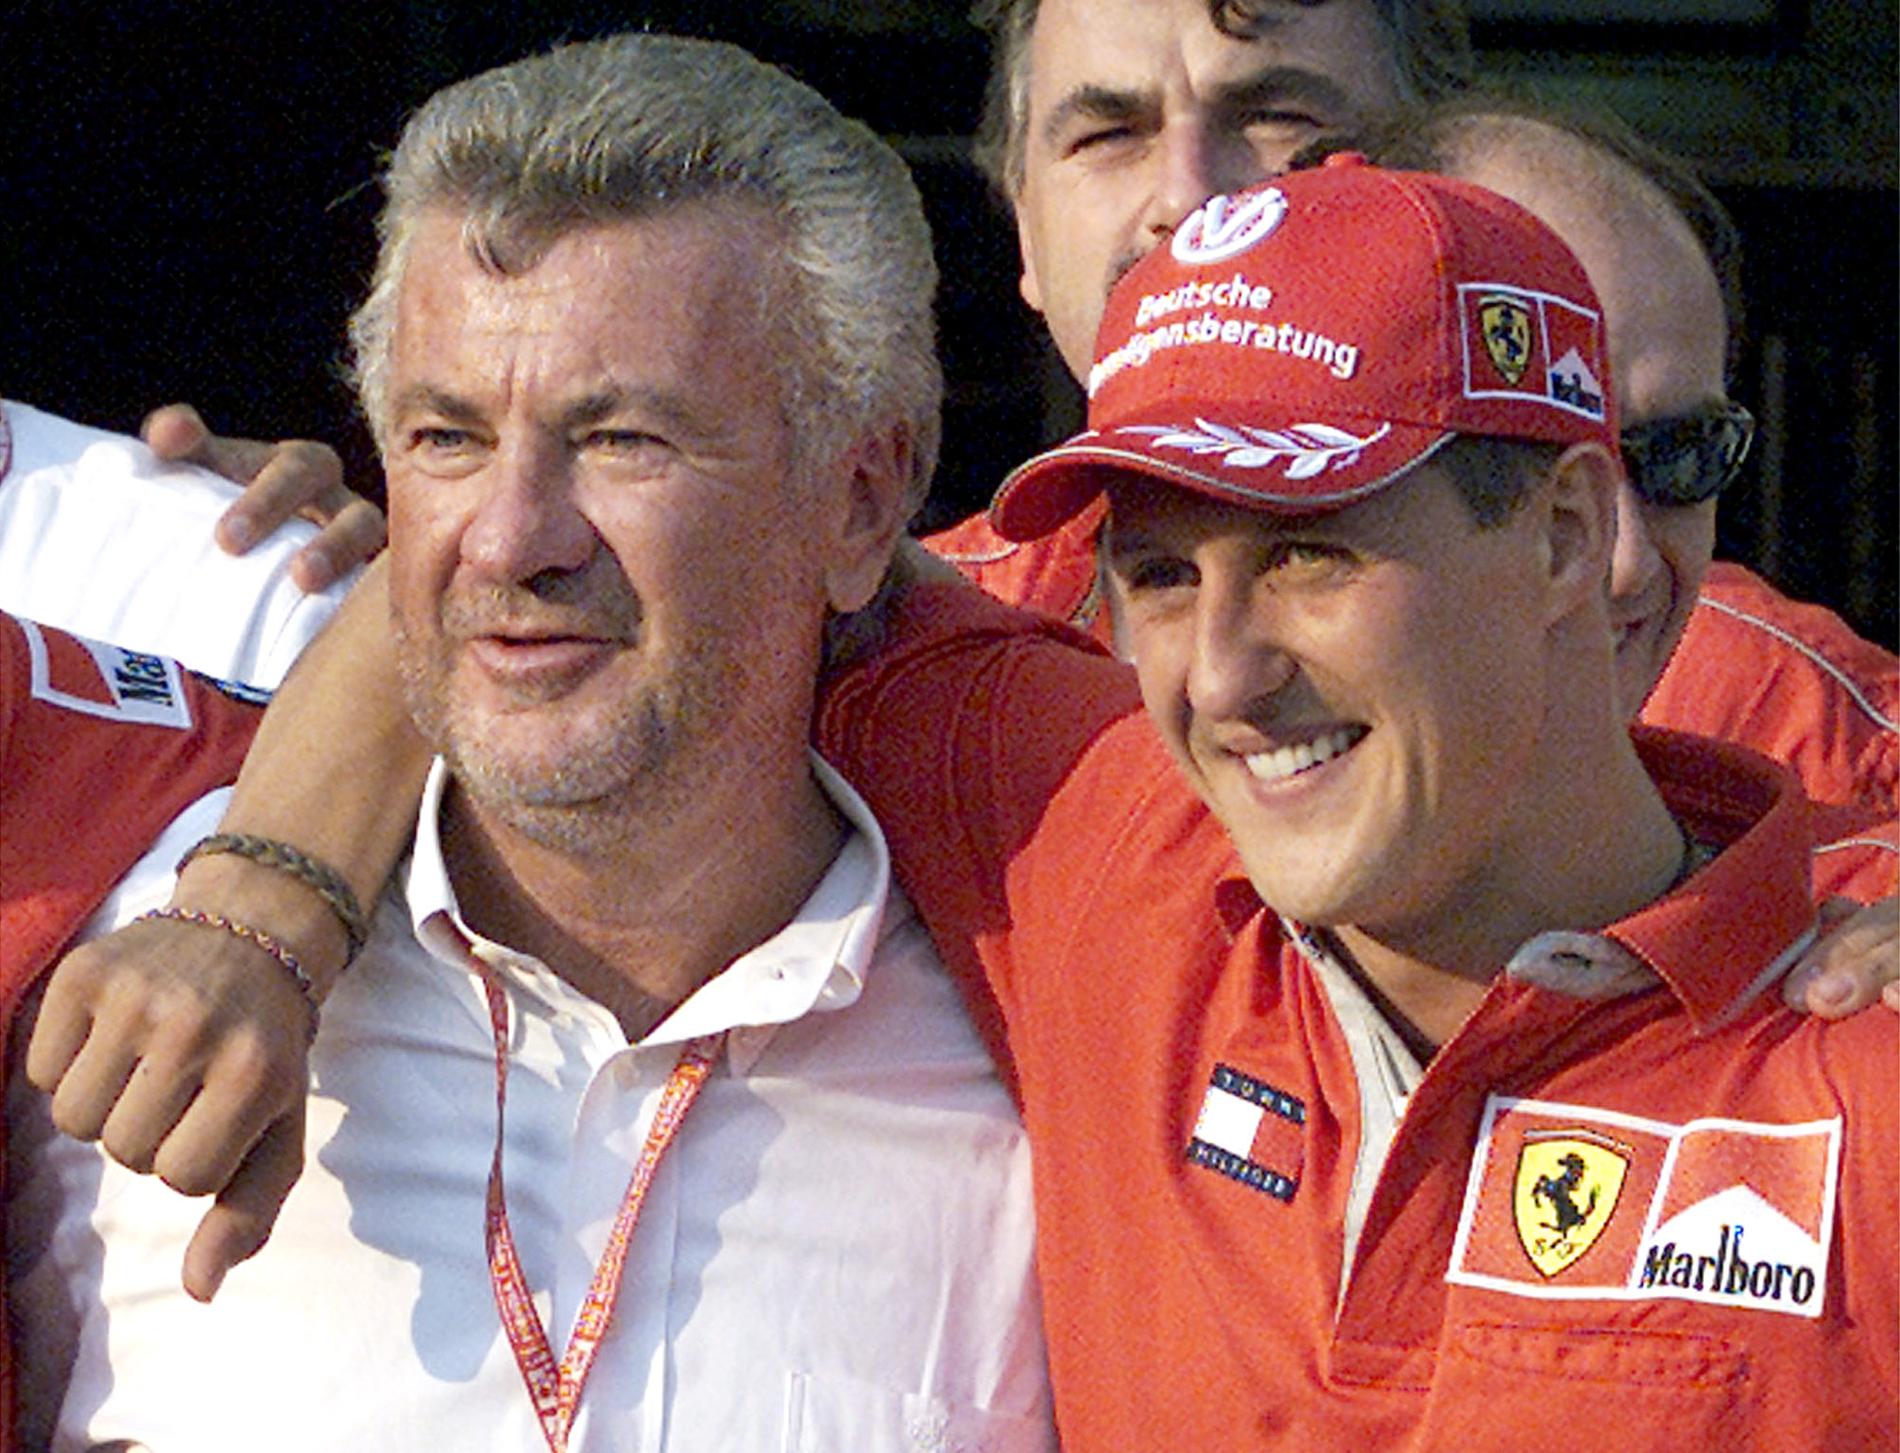 Willi Weber och Michael Schumacher.